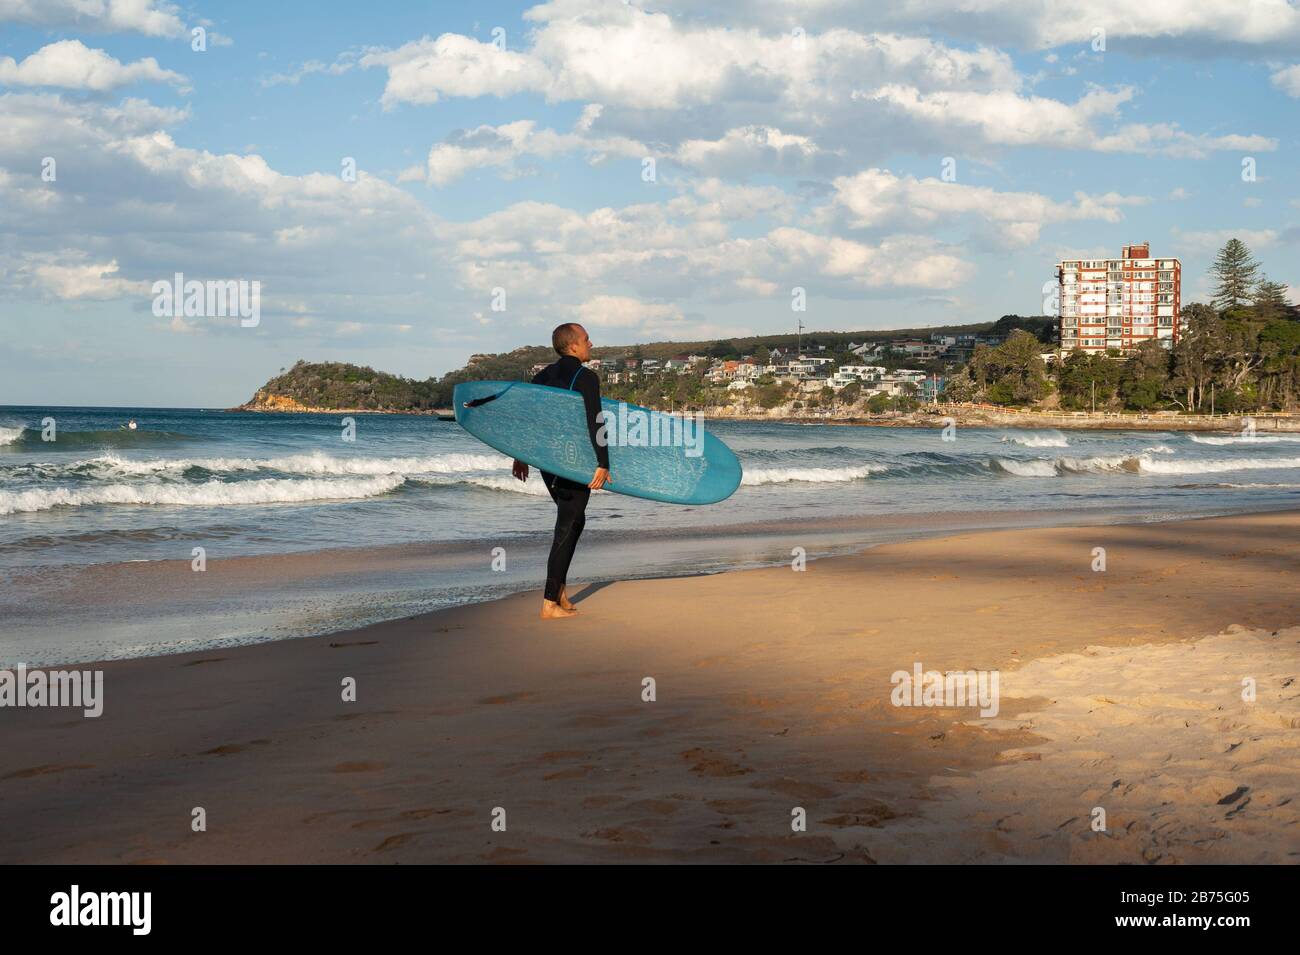 10.05.2018, Sydney, Nueva Gales del Sur, Australia - un hombre camina a lo largo de la playa de Manly con su tabla de surf bajo su brazo mientras otros surfistas están esperando en el fondo para la ola derecha. [traducción automática] Foto de stock